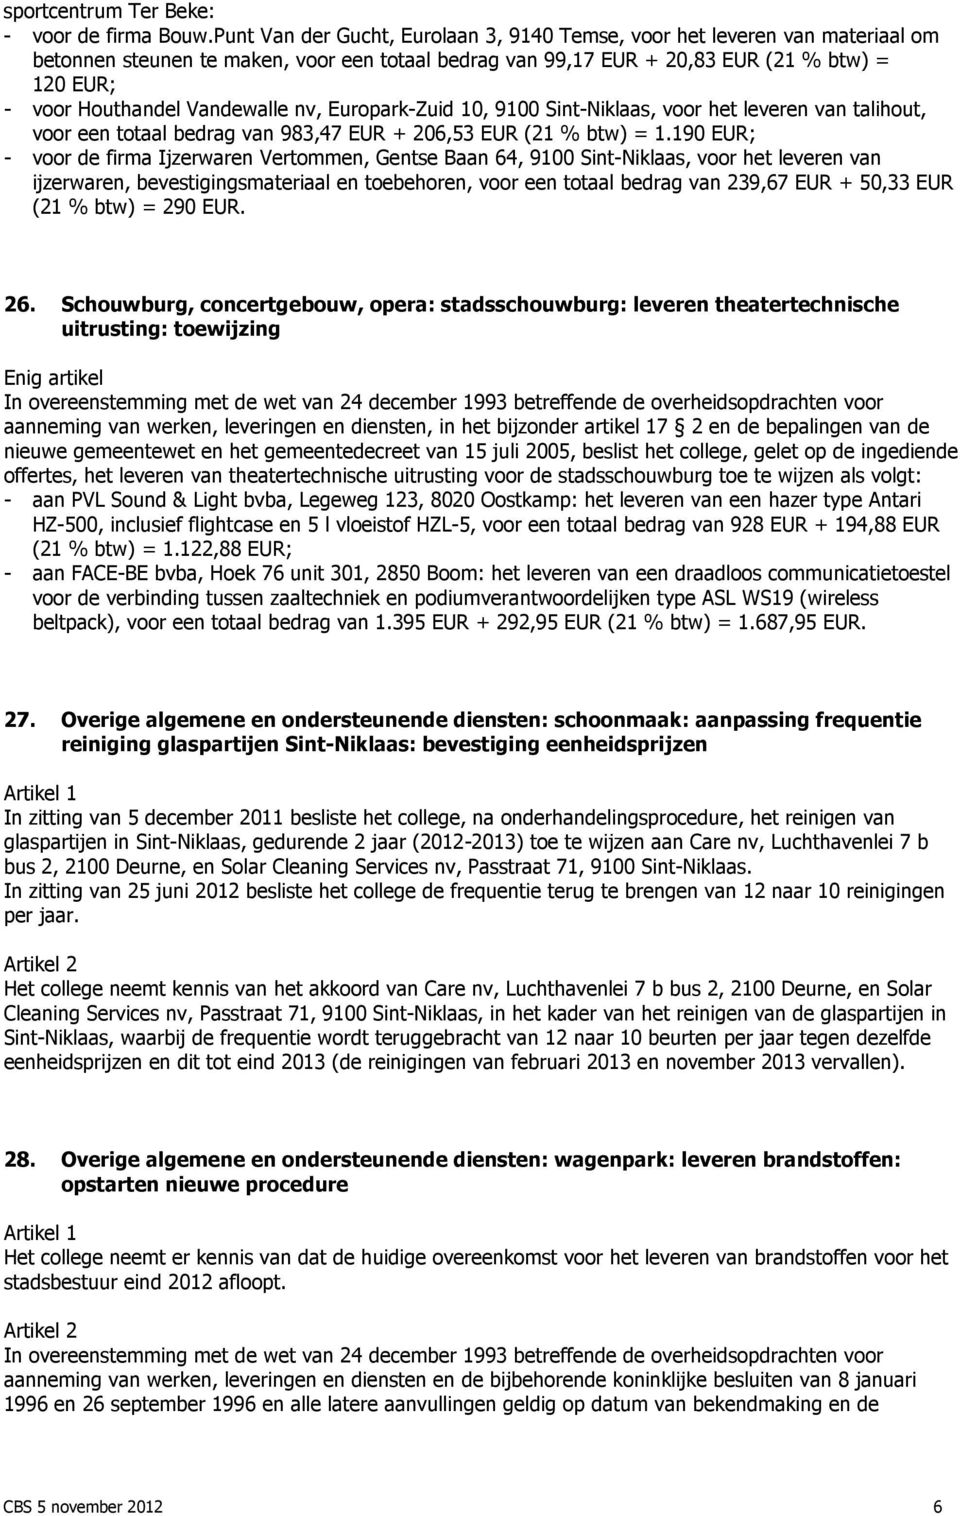 Vandewalle nv, Europark-Zuid 10, 9100 Sint-Niklaas, voor het leveren van talihout, voor een totaal bedrag van 983,47 EUR + 206,53 EUR (21 % btw) = 1.